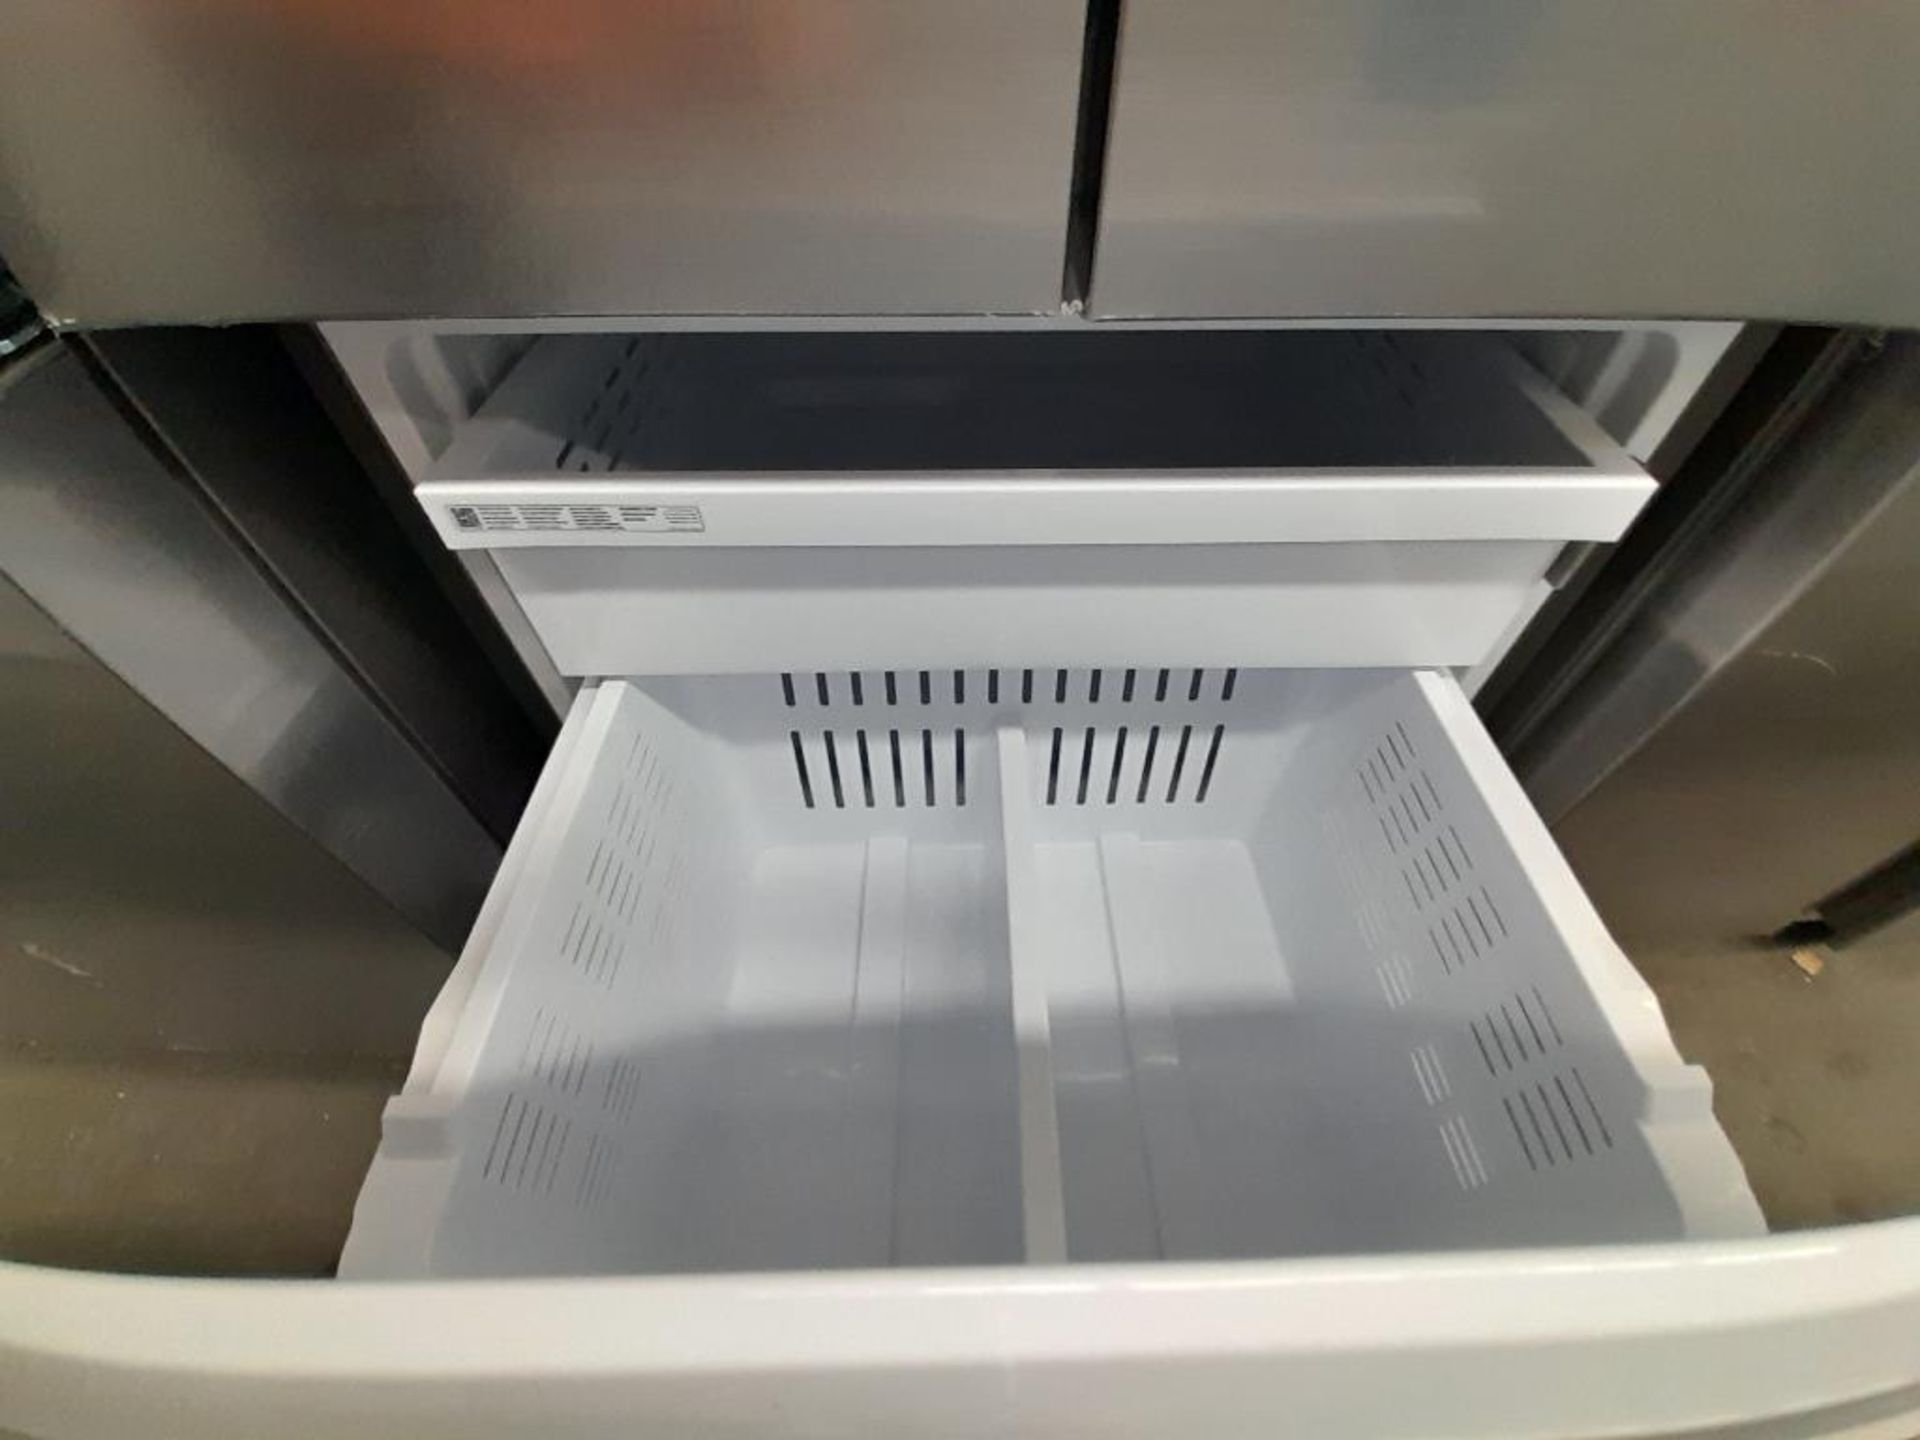 Lote de 1 Refrigerador Marca SAMSUNG, Modelo RF22A401059, Serie 100923F, Color GRIS;(Detalles estét - Image 5 of 6